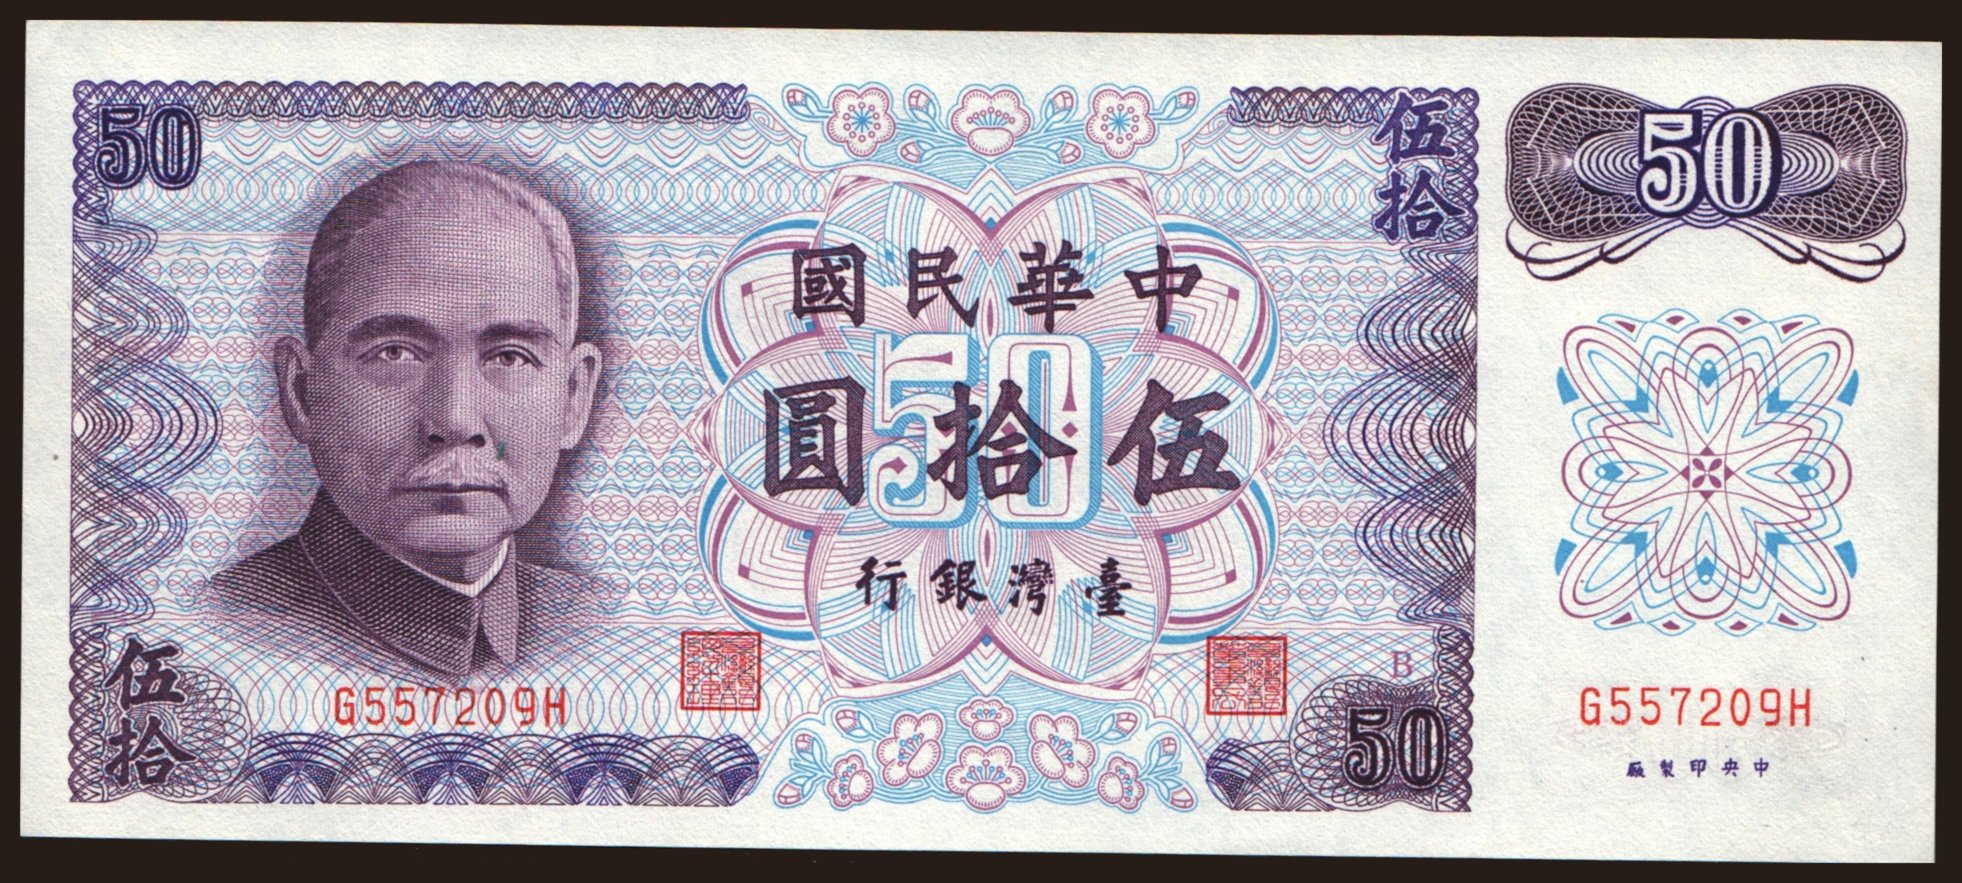 50 yuan, 1972